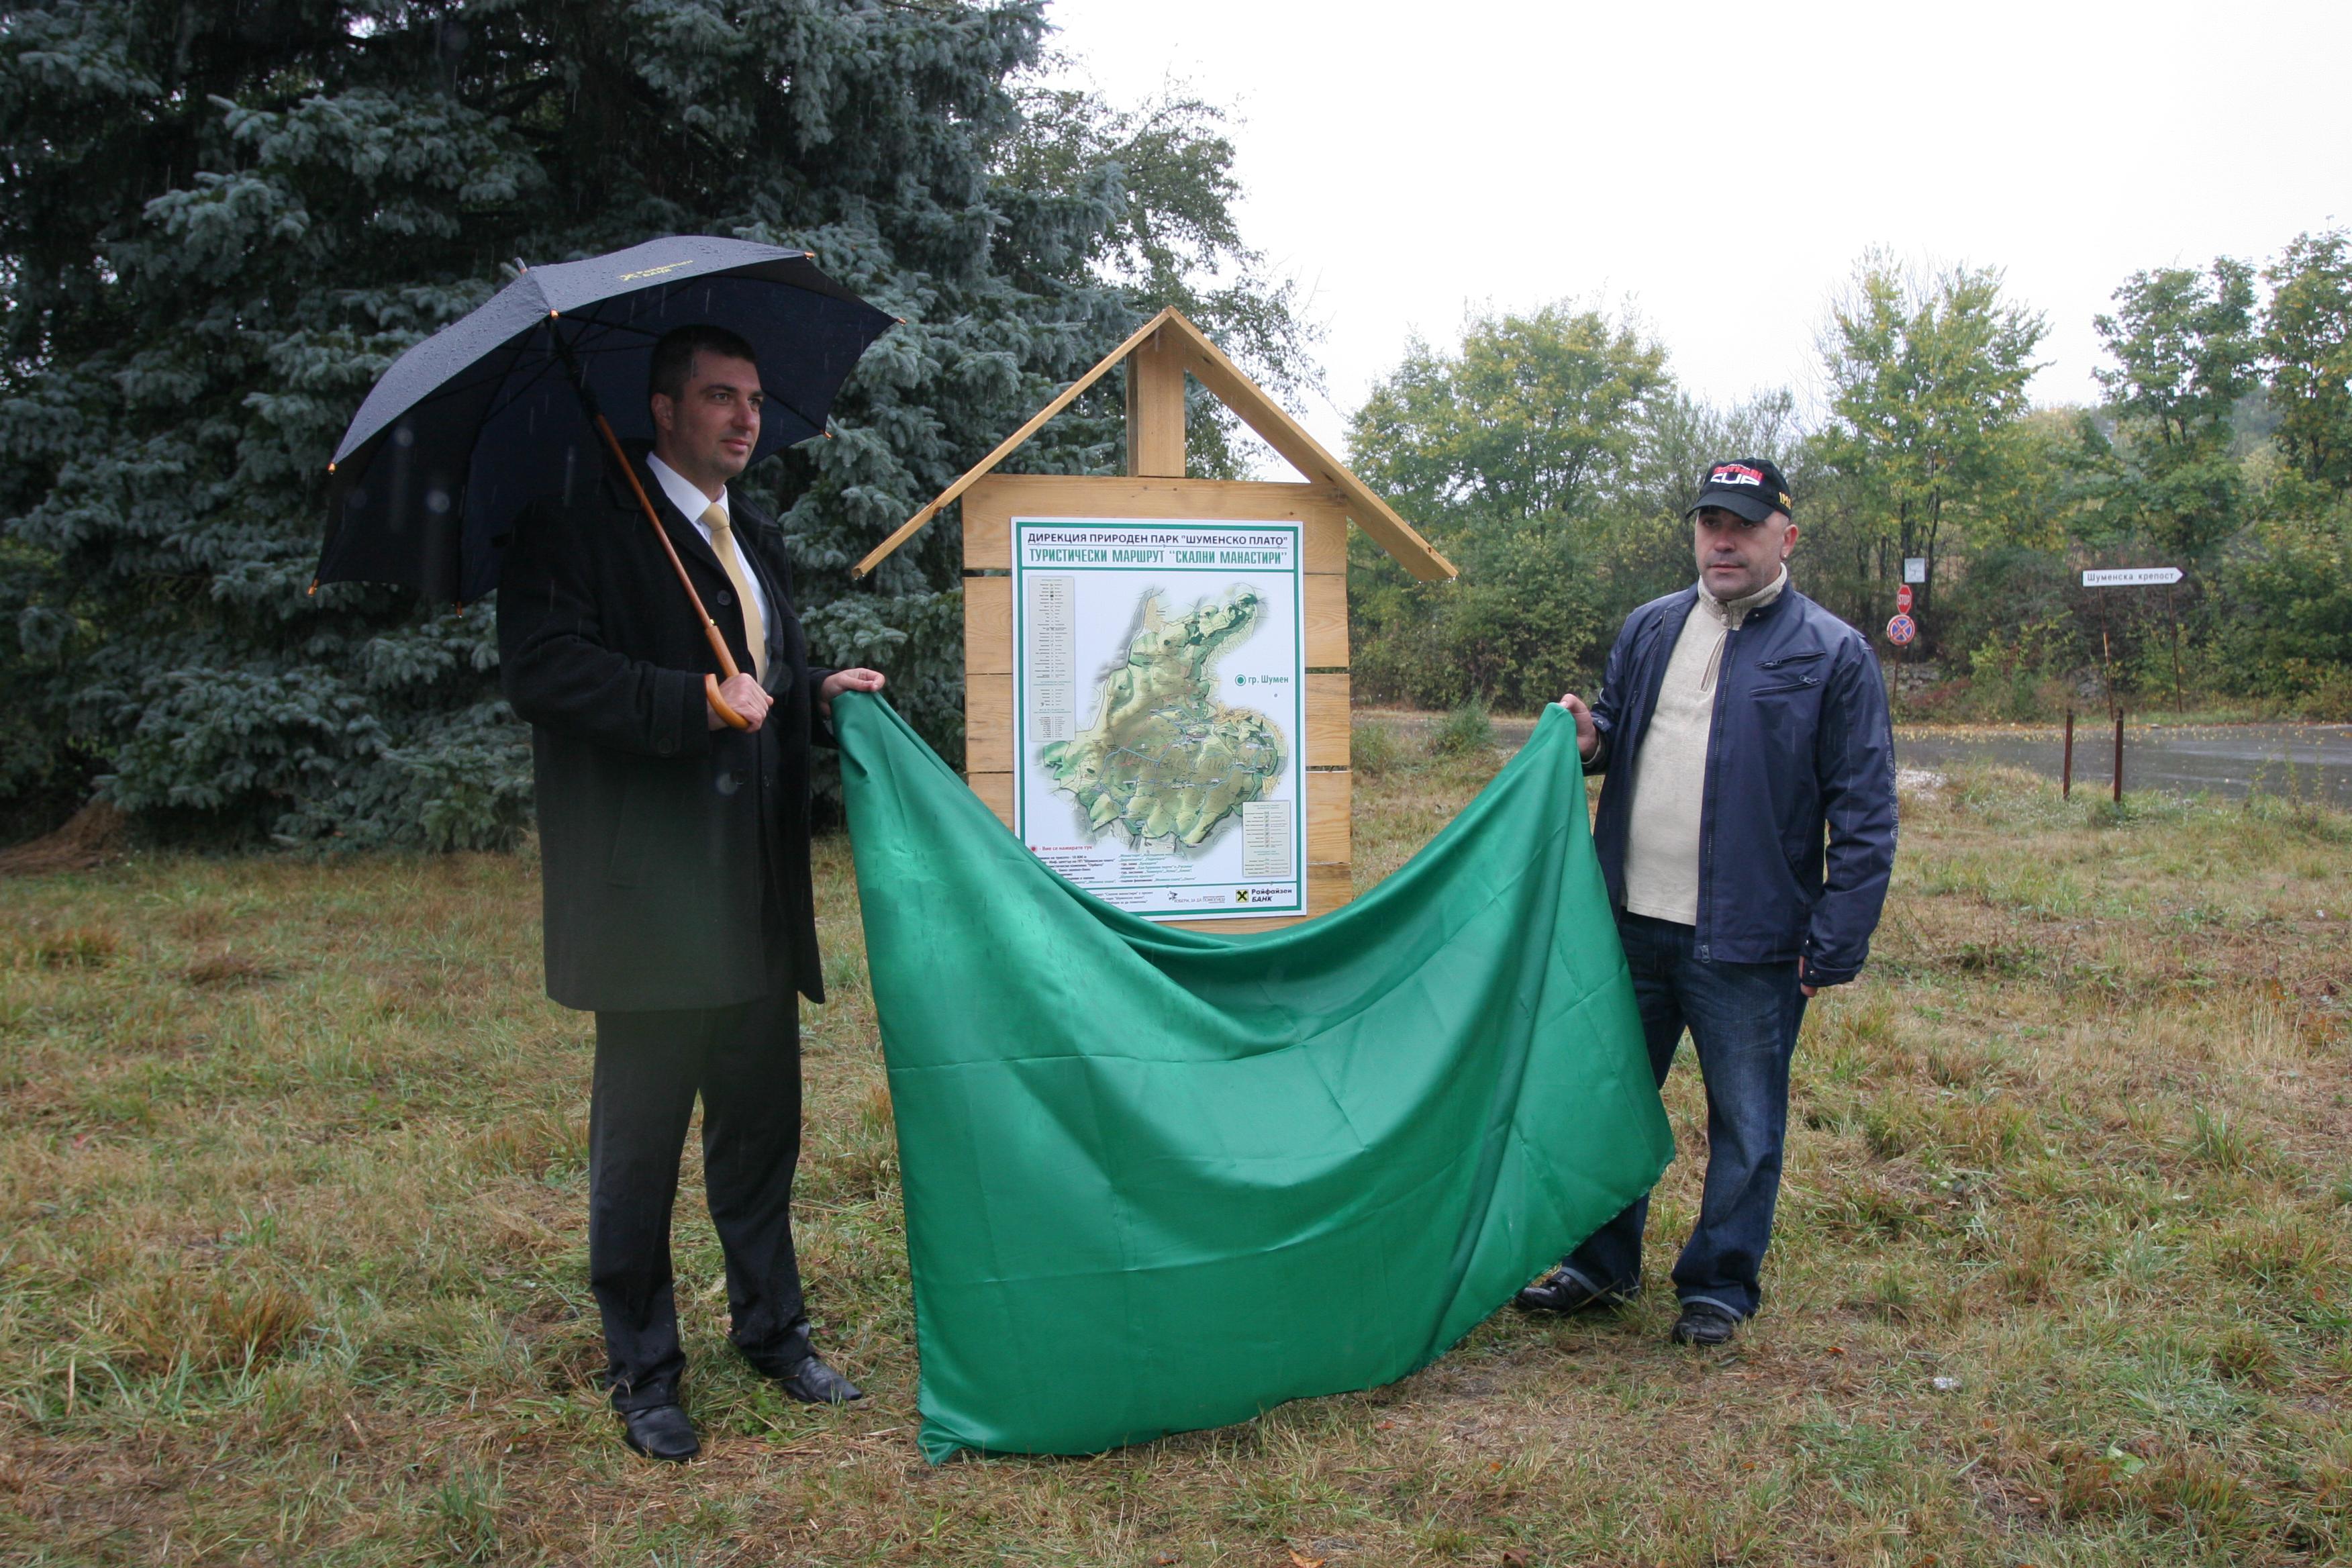 Регионалният управител на Райфайзенбанк във Варна Владислав Богданов и Директорът на Природен Парк Шуменско плато Десислав Милев